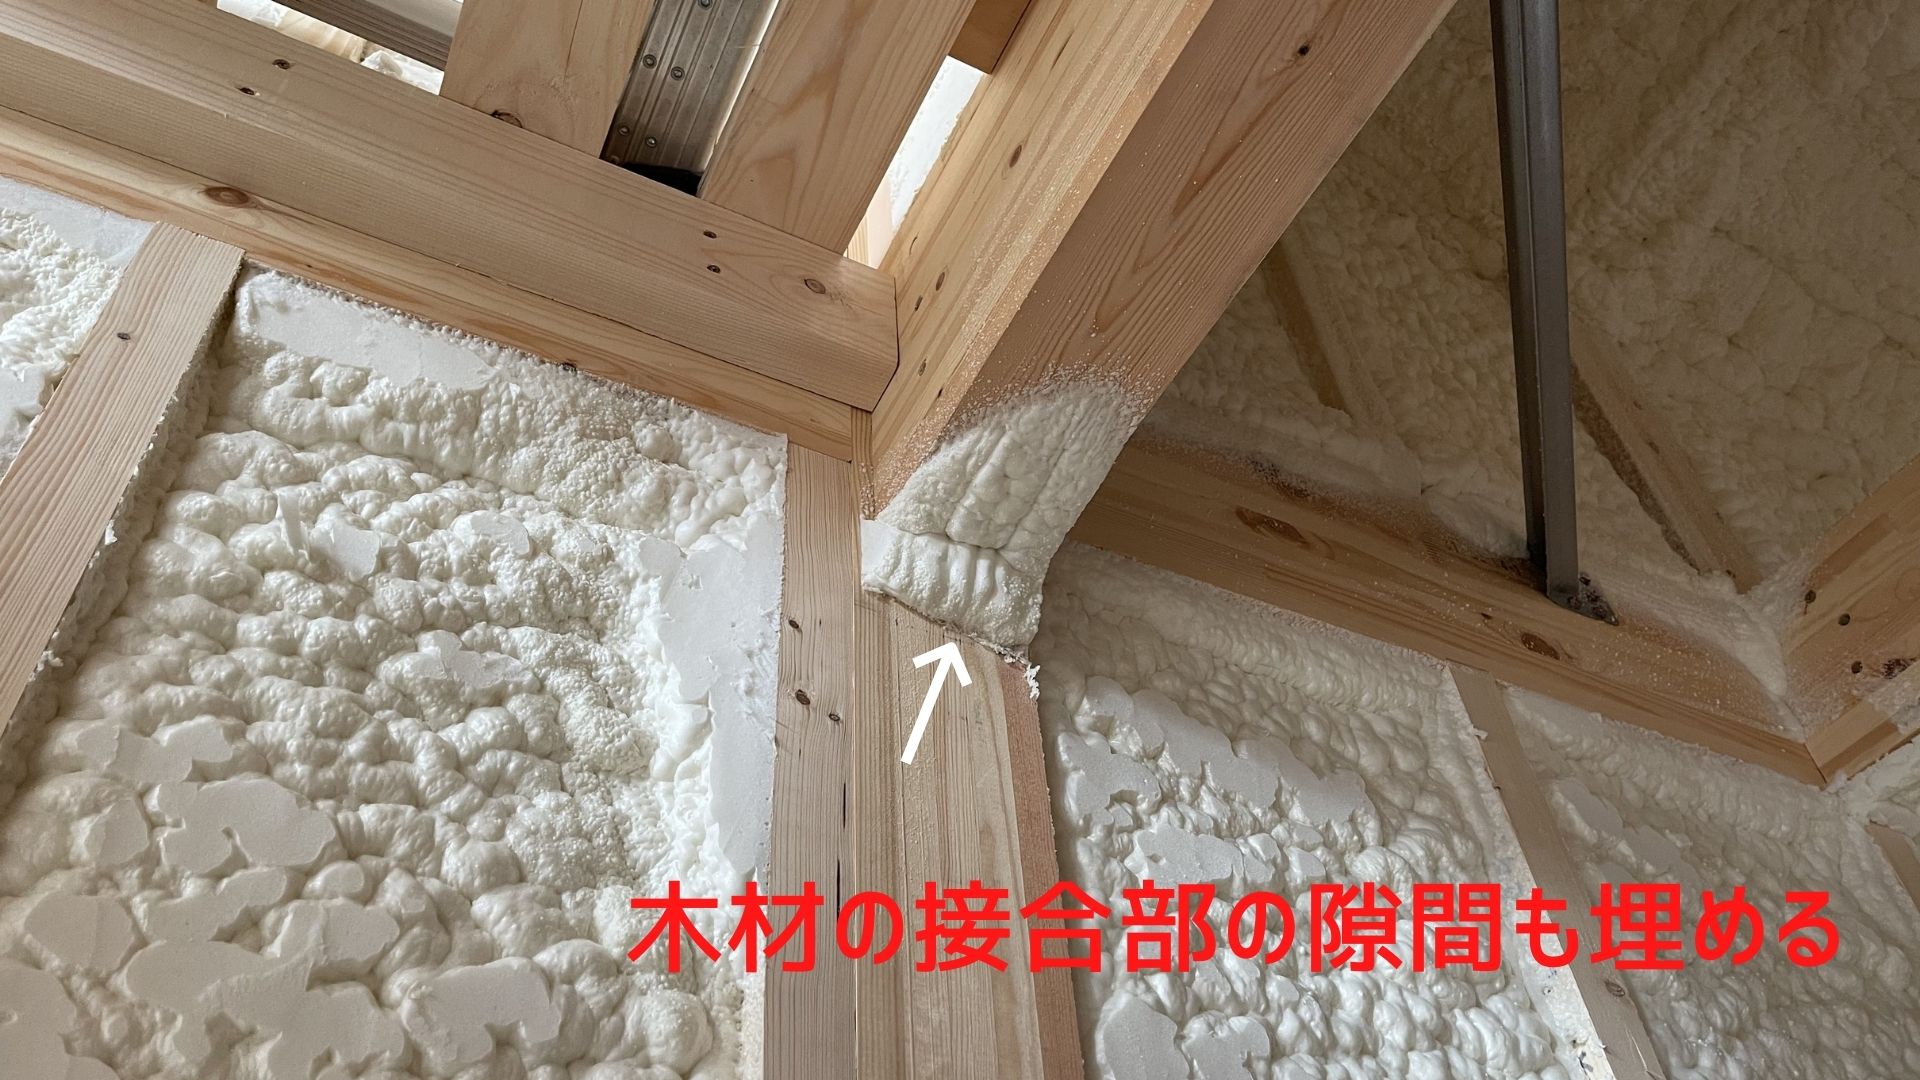 木造住宅の工程 壁と天井へのウレタンフォーム吹付け断熱材の施工は注意ポイントだらけです イエ家いえ